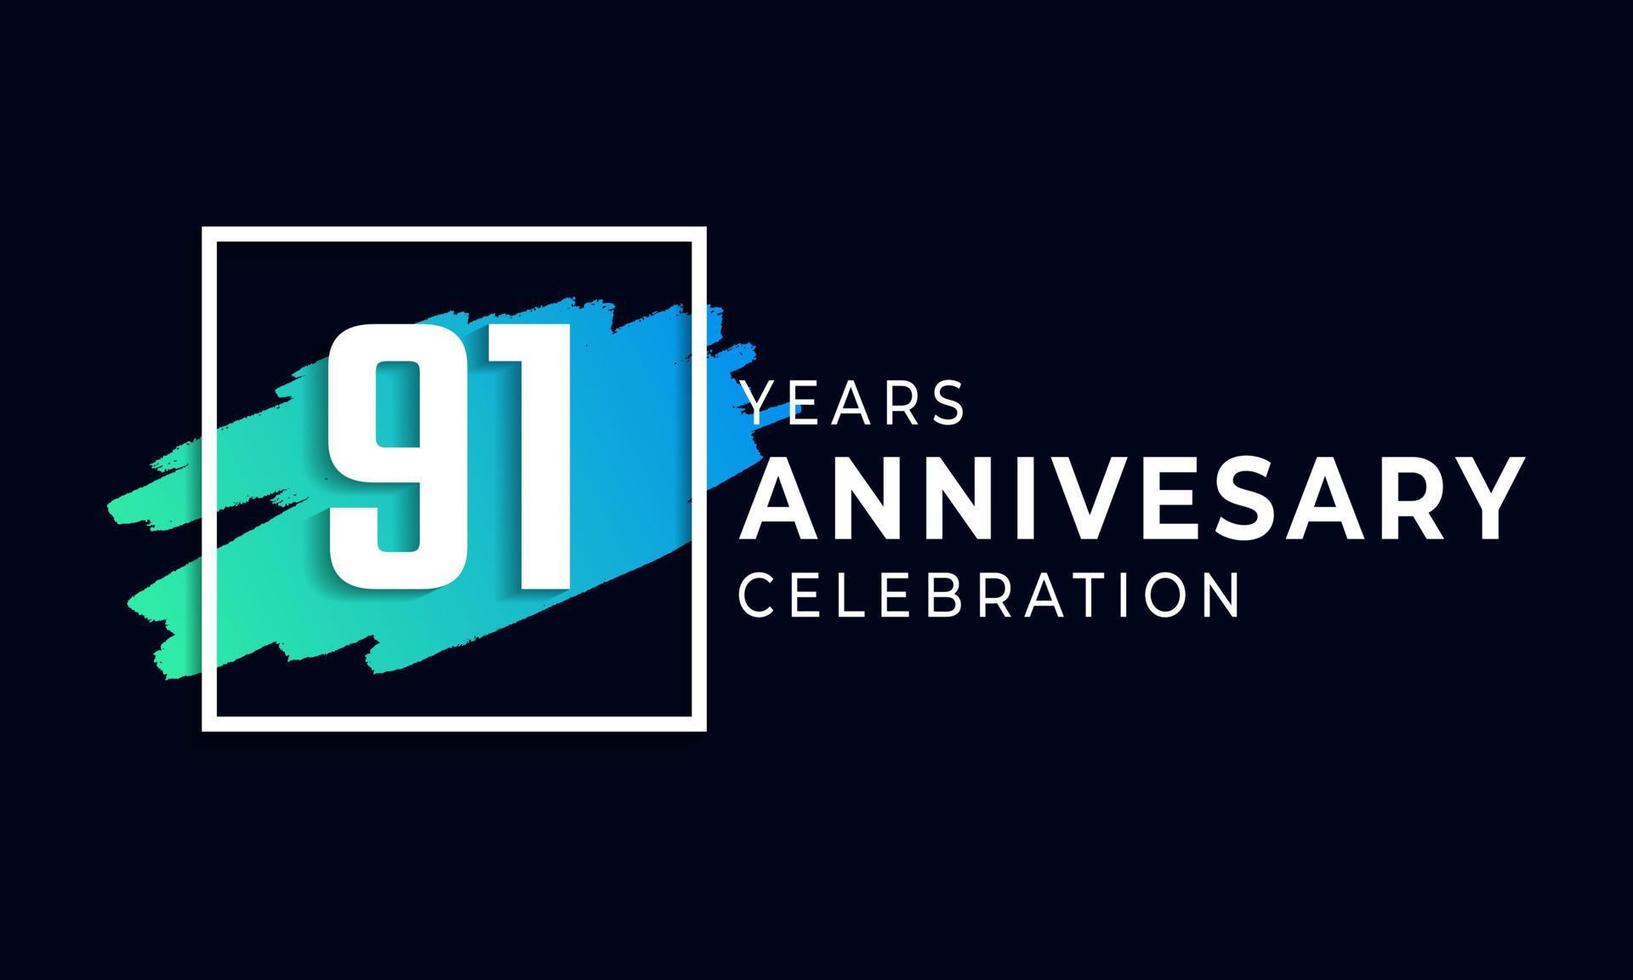 Célébration du 91e anniversaire avec une brosse bleue et un symbole carré. joyeux anniversaire salutation célèbre l'événement isolé sur fond noir vecteur